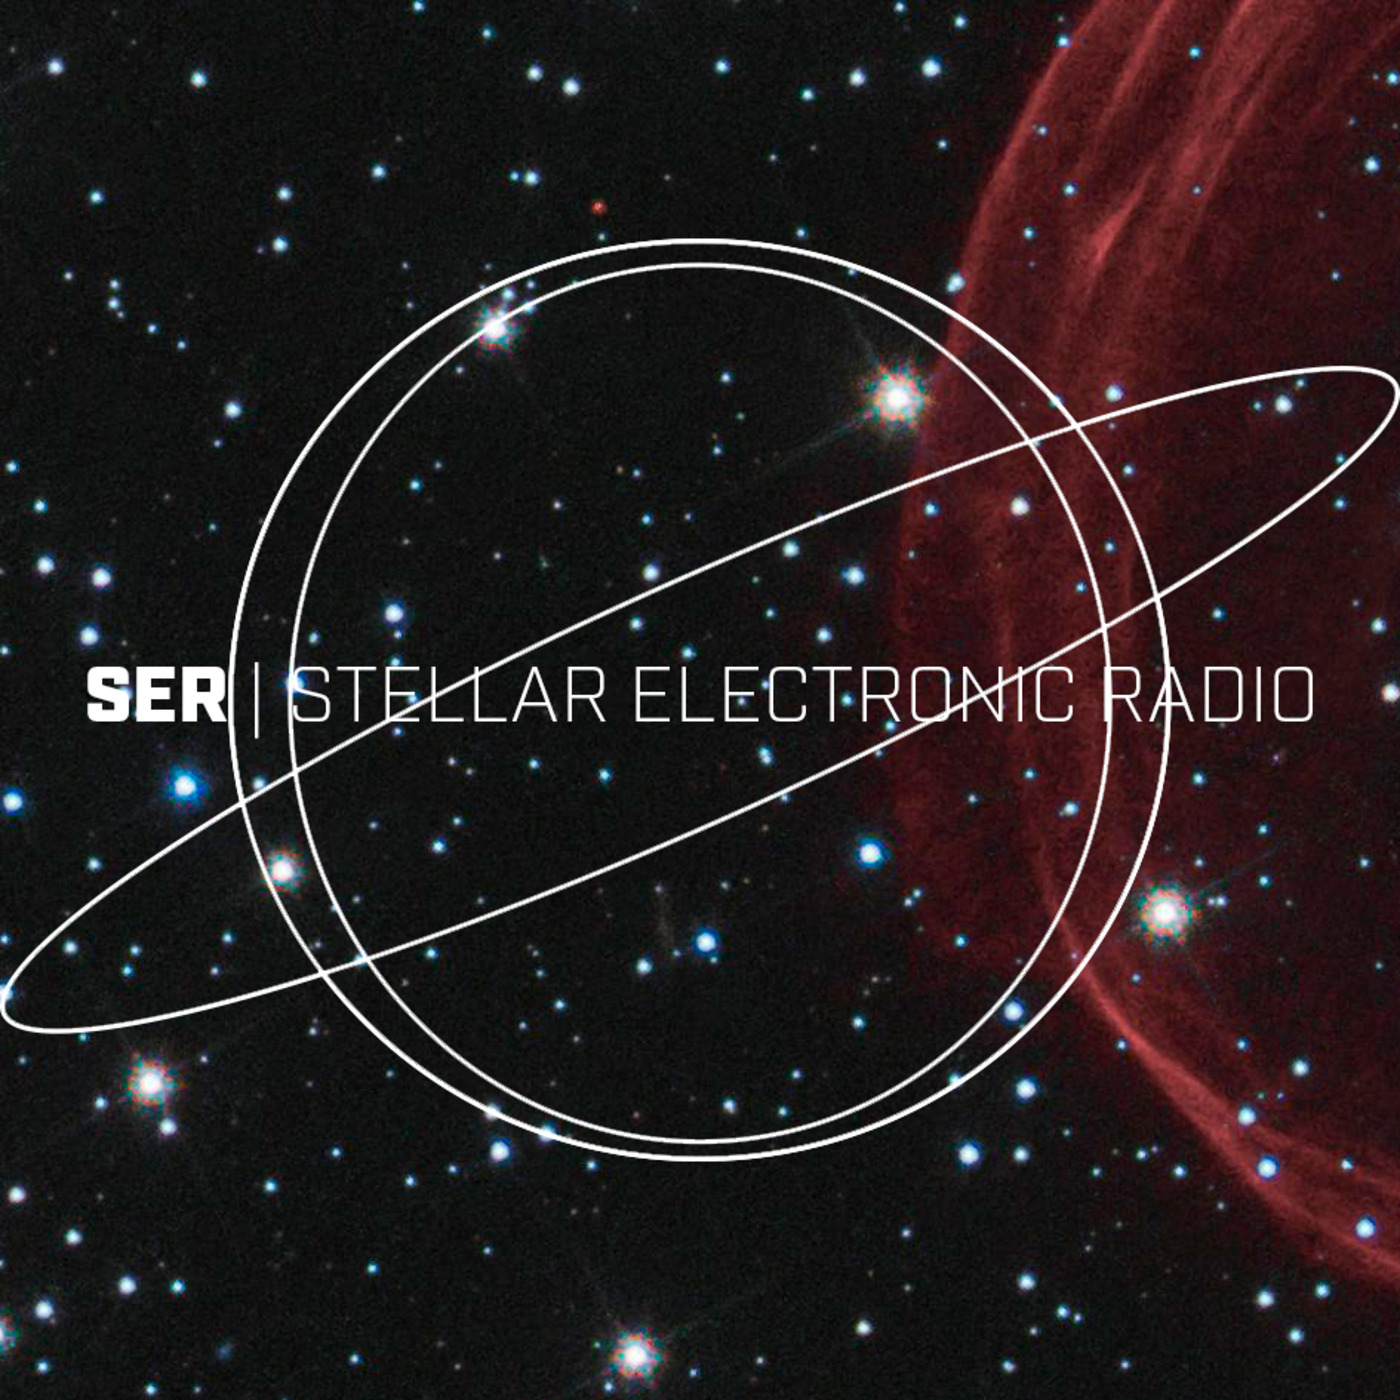 SER | STELLAR ELECTRONIC RADIO